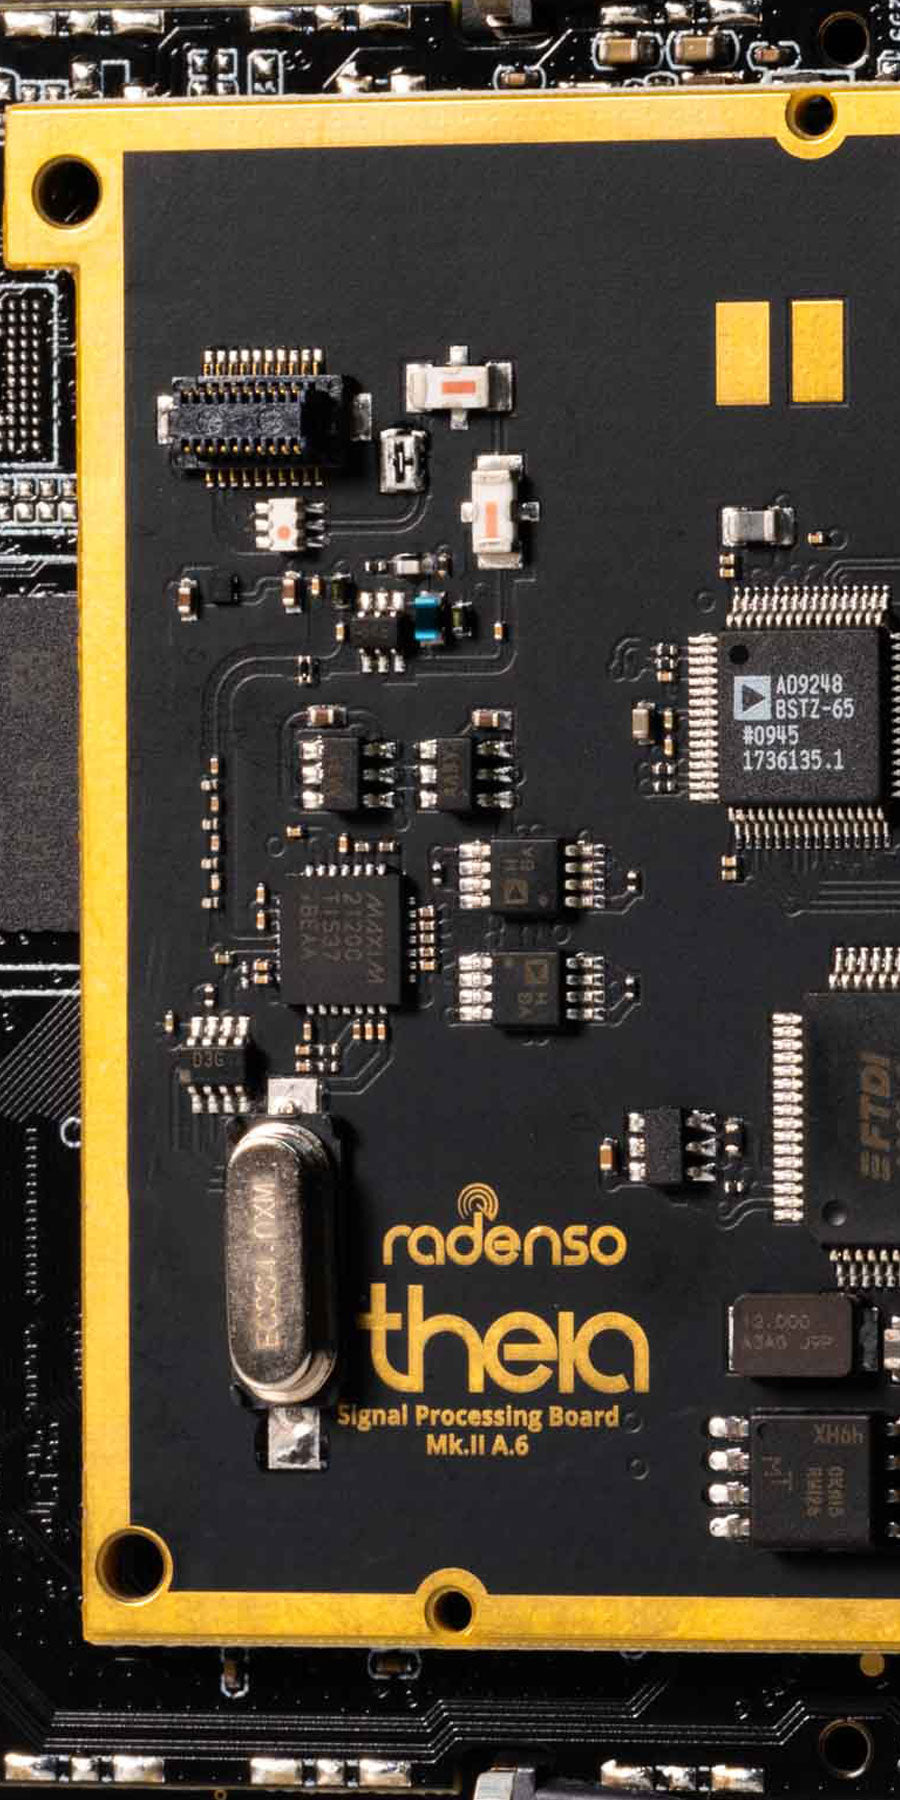 Radenso Theia Radar Detector